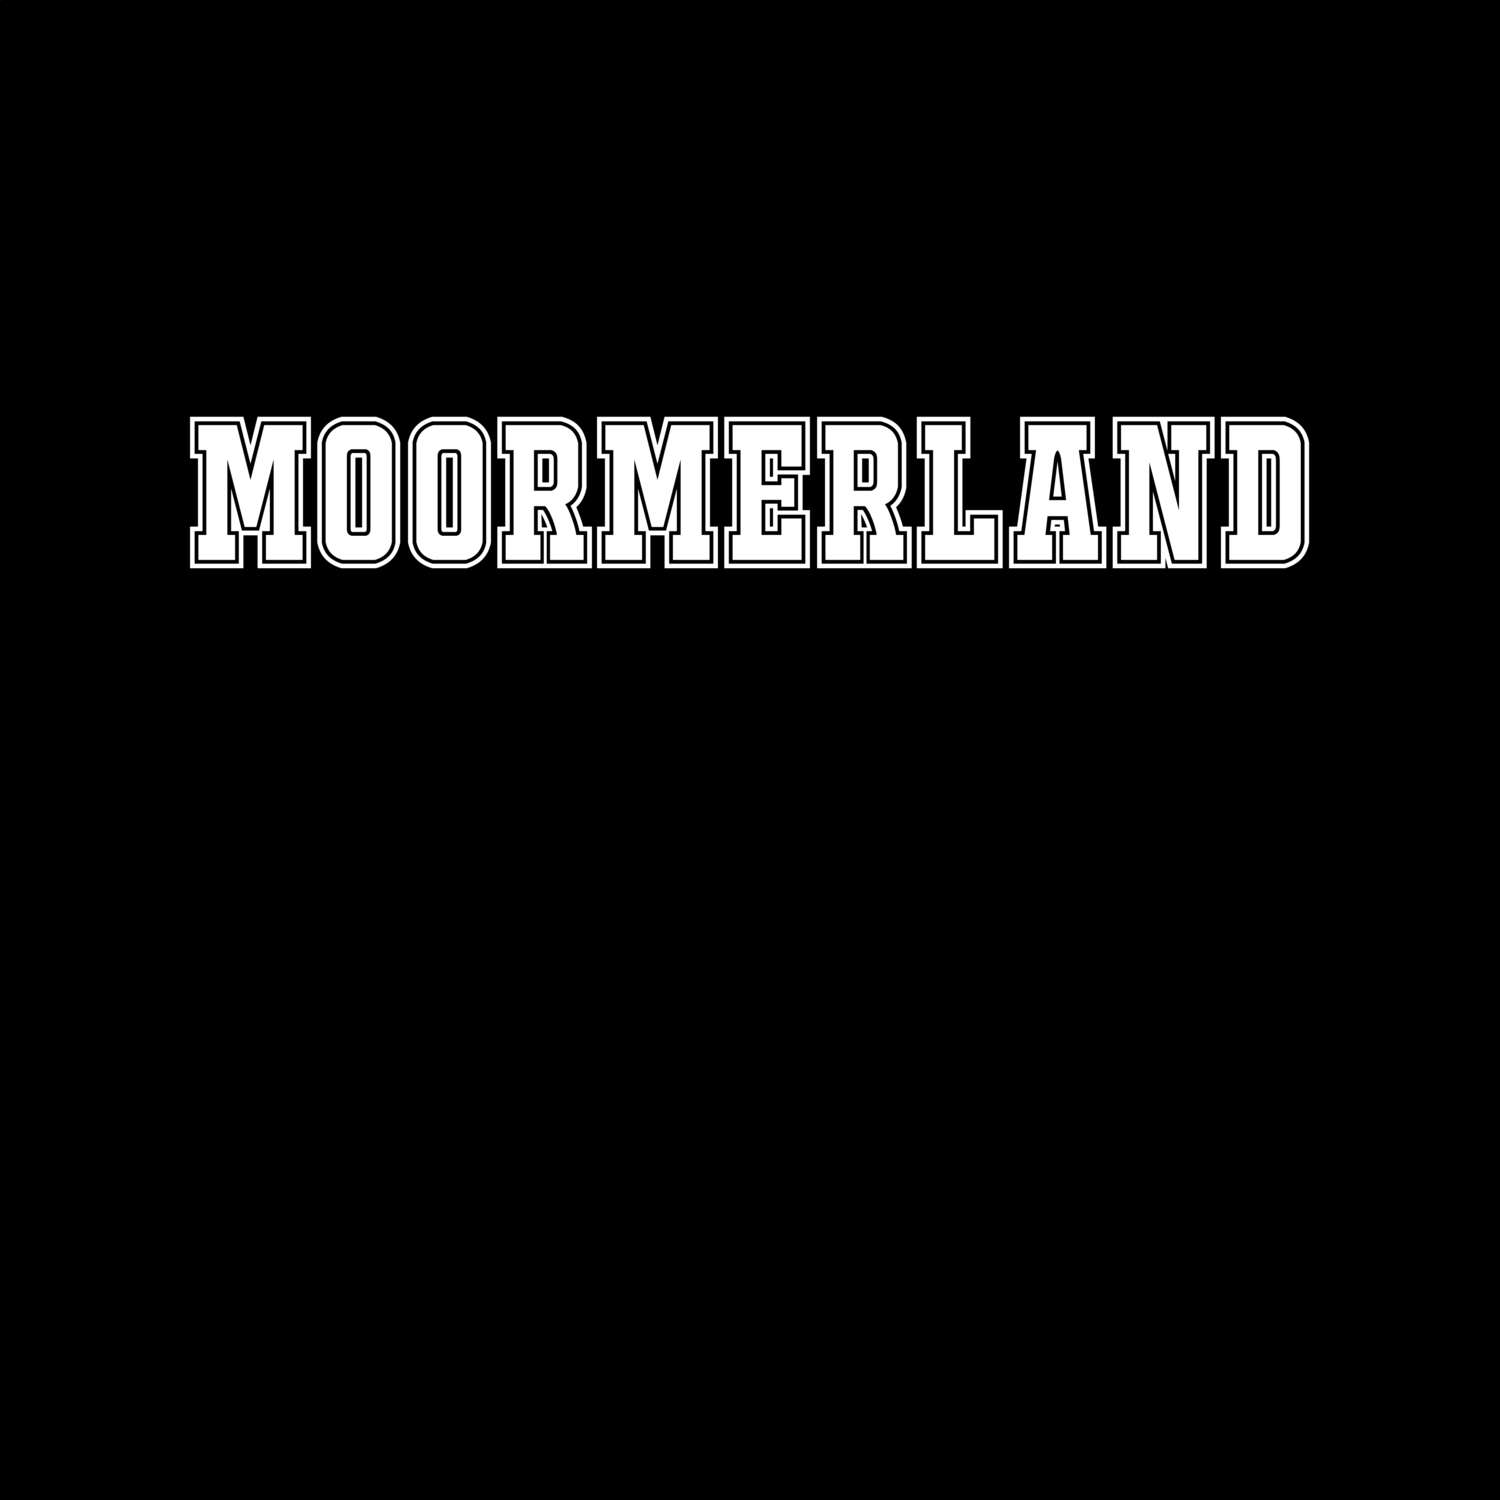 Moormerland T-Shirt »Classic«